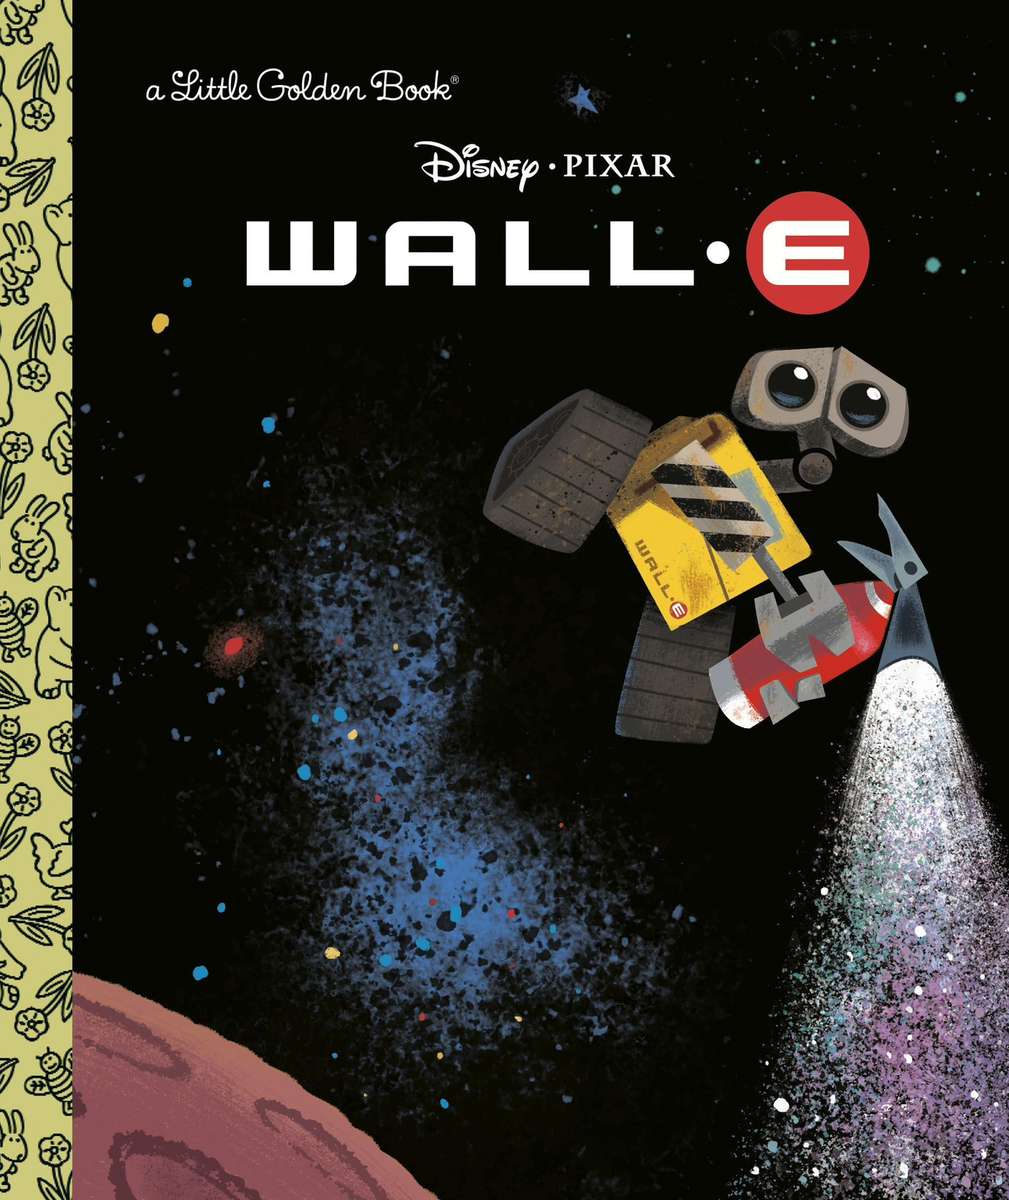 Wall-E (Ein kleines goldenes Buch) Puzzlespiel online